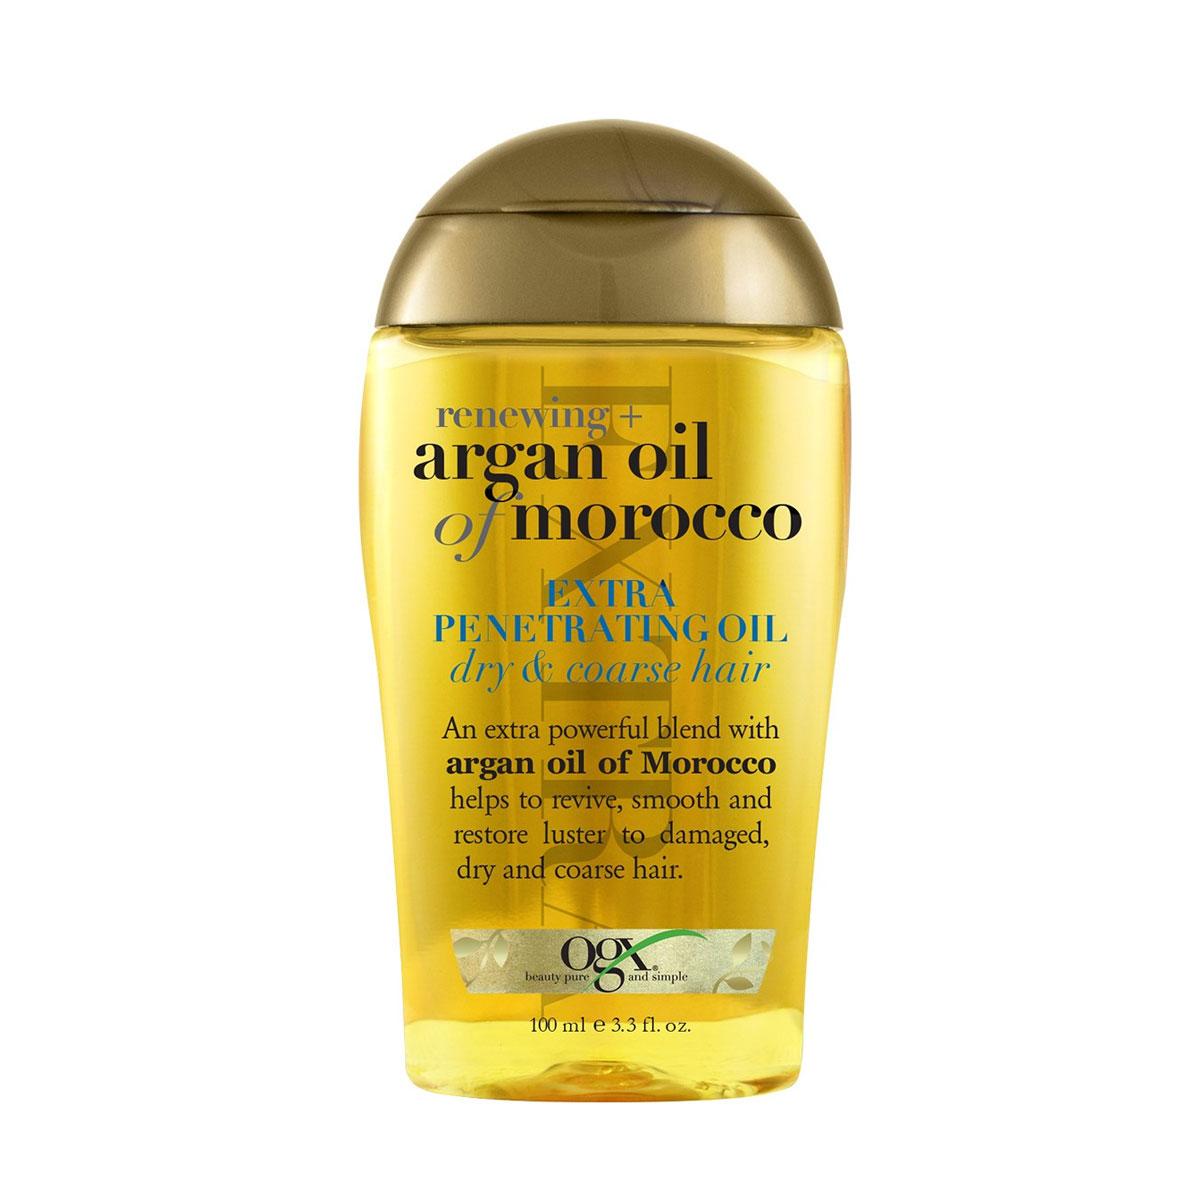 روغن آرگان مدل اکسترا - argan oil of moroco